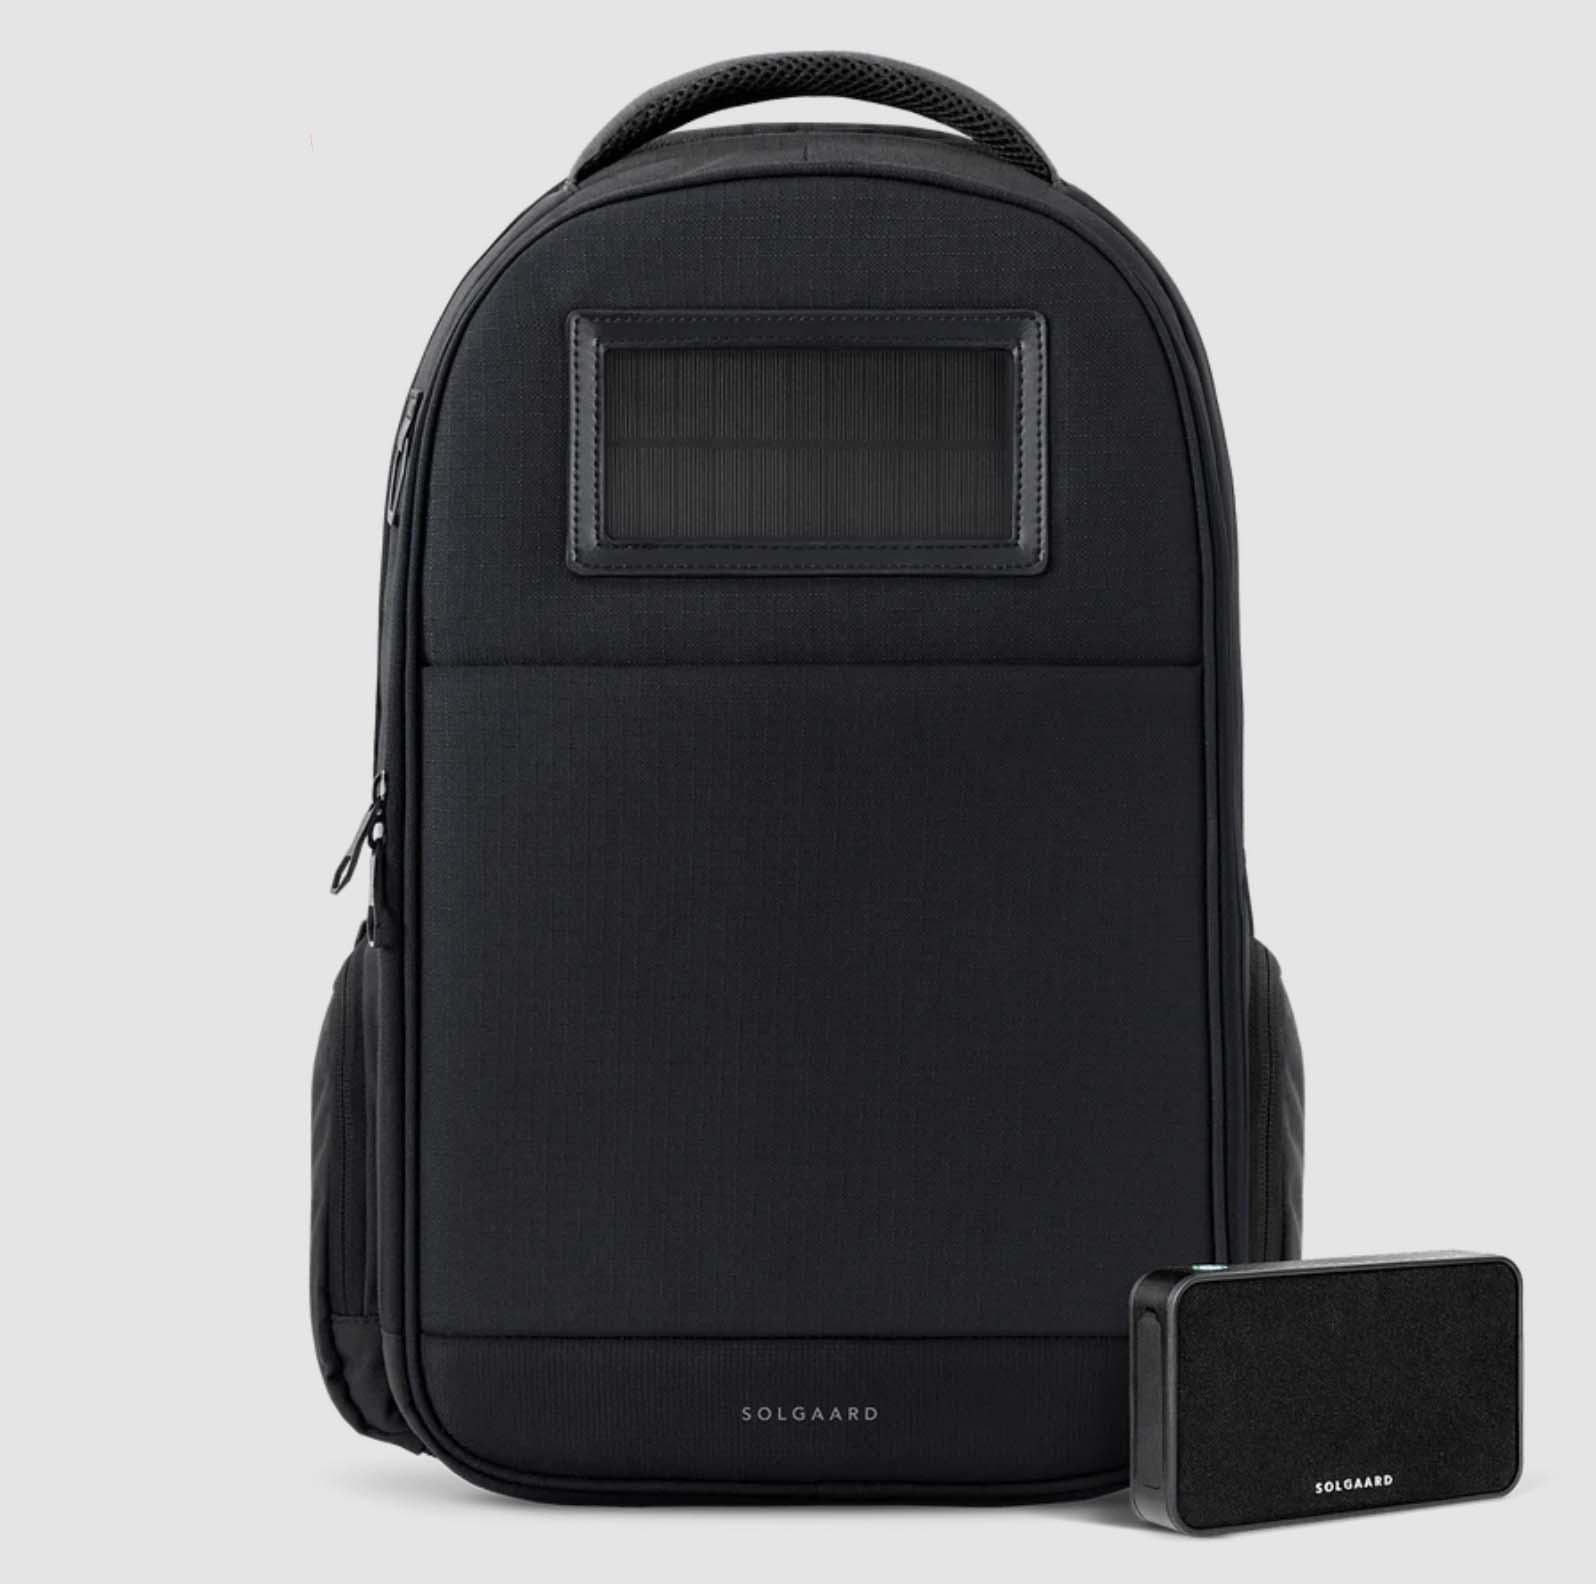 Soolgard backpack in black with battery pack